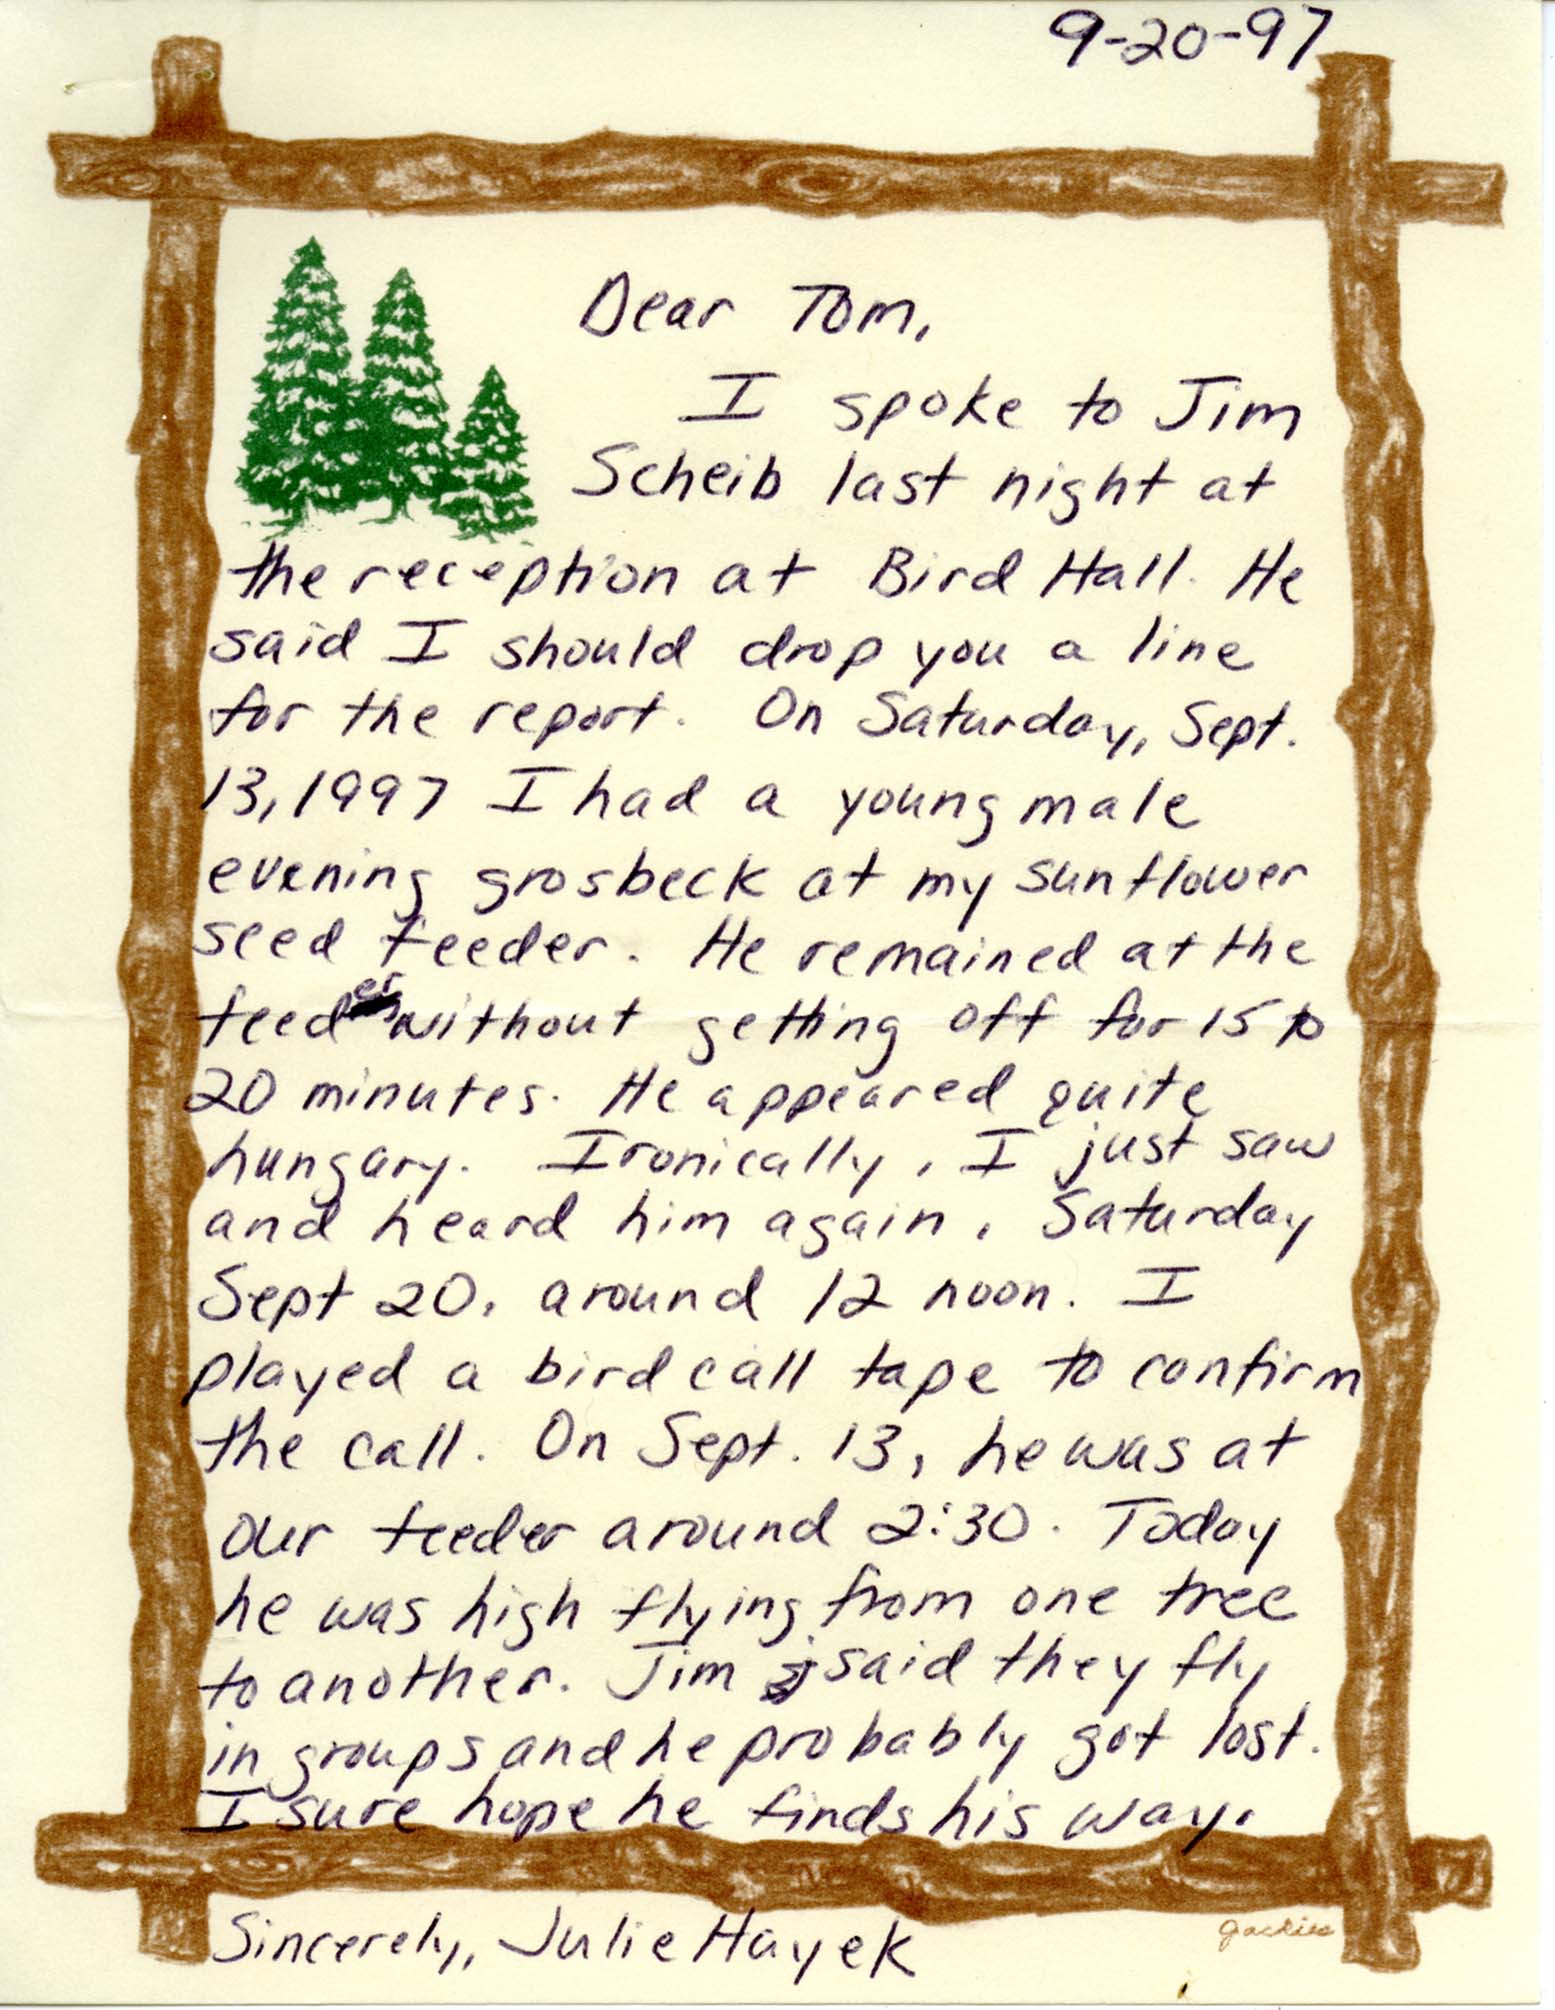 Julie B. Hayek letter to Thomas H. Kent regarding an Evening Grosbeak sighting, September 20, 1997